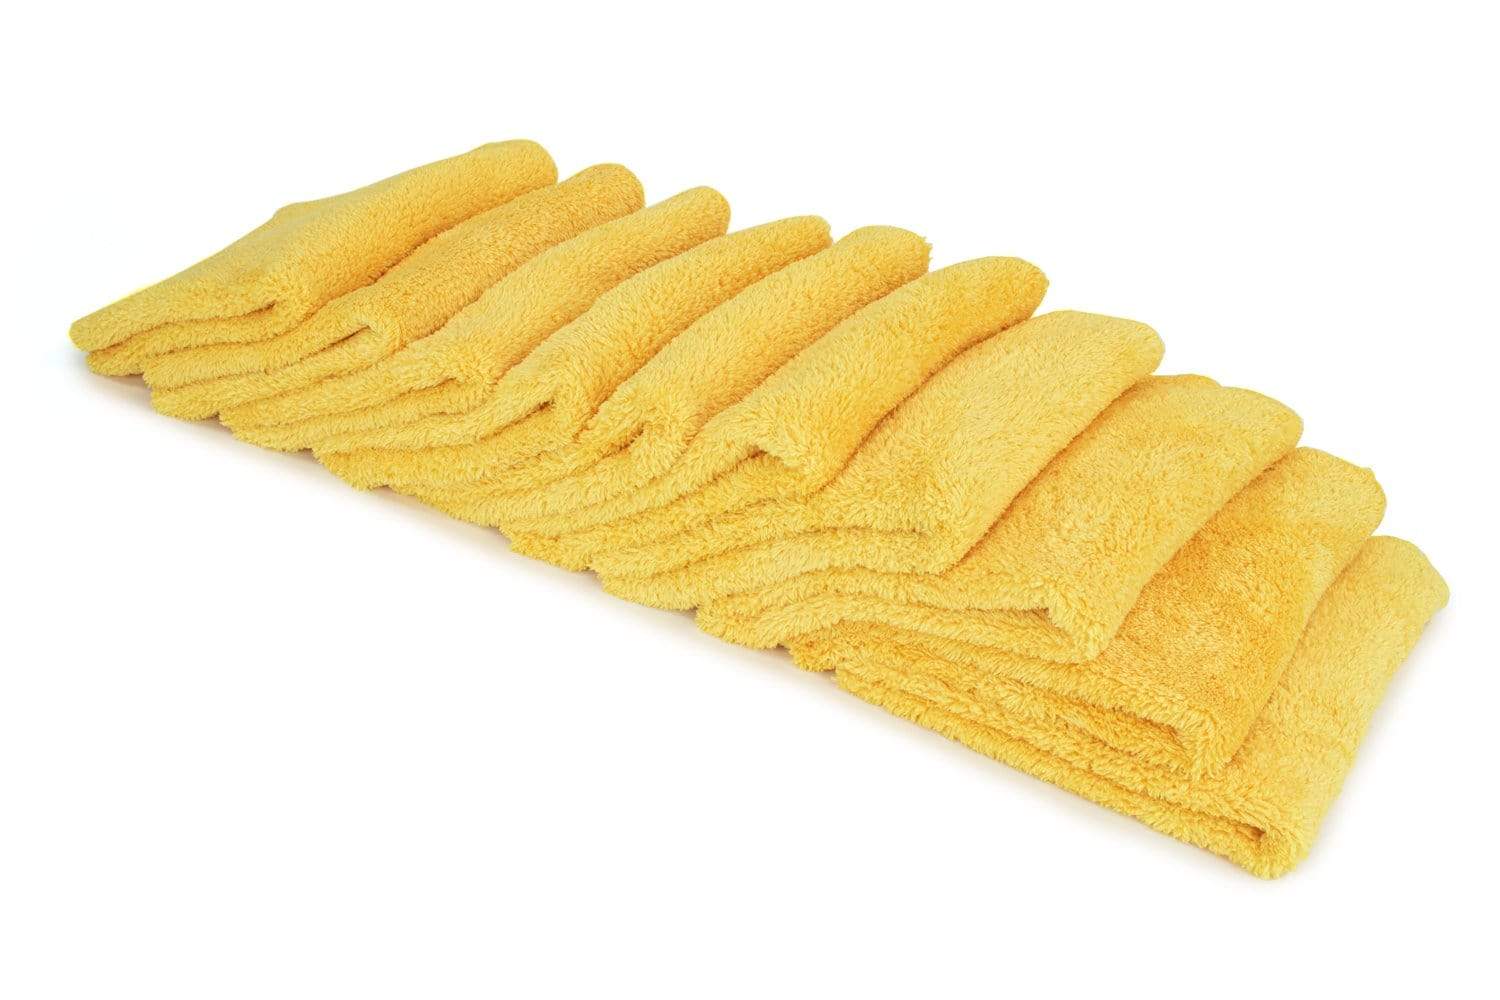 Autofiber Towel Gold [Korean Plush 350] Microfiber Detailing Towel (16 in. x 16 in., 350 gsm) 10 pack BULK BUNDLE